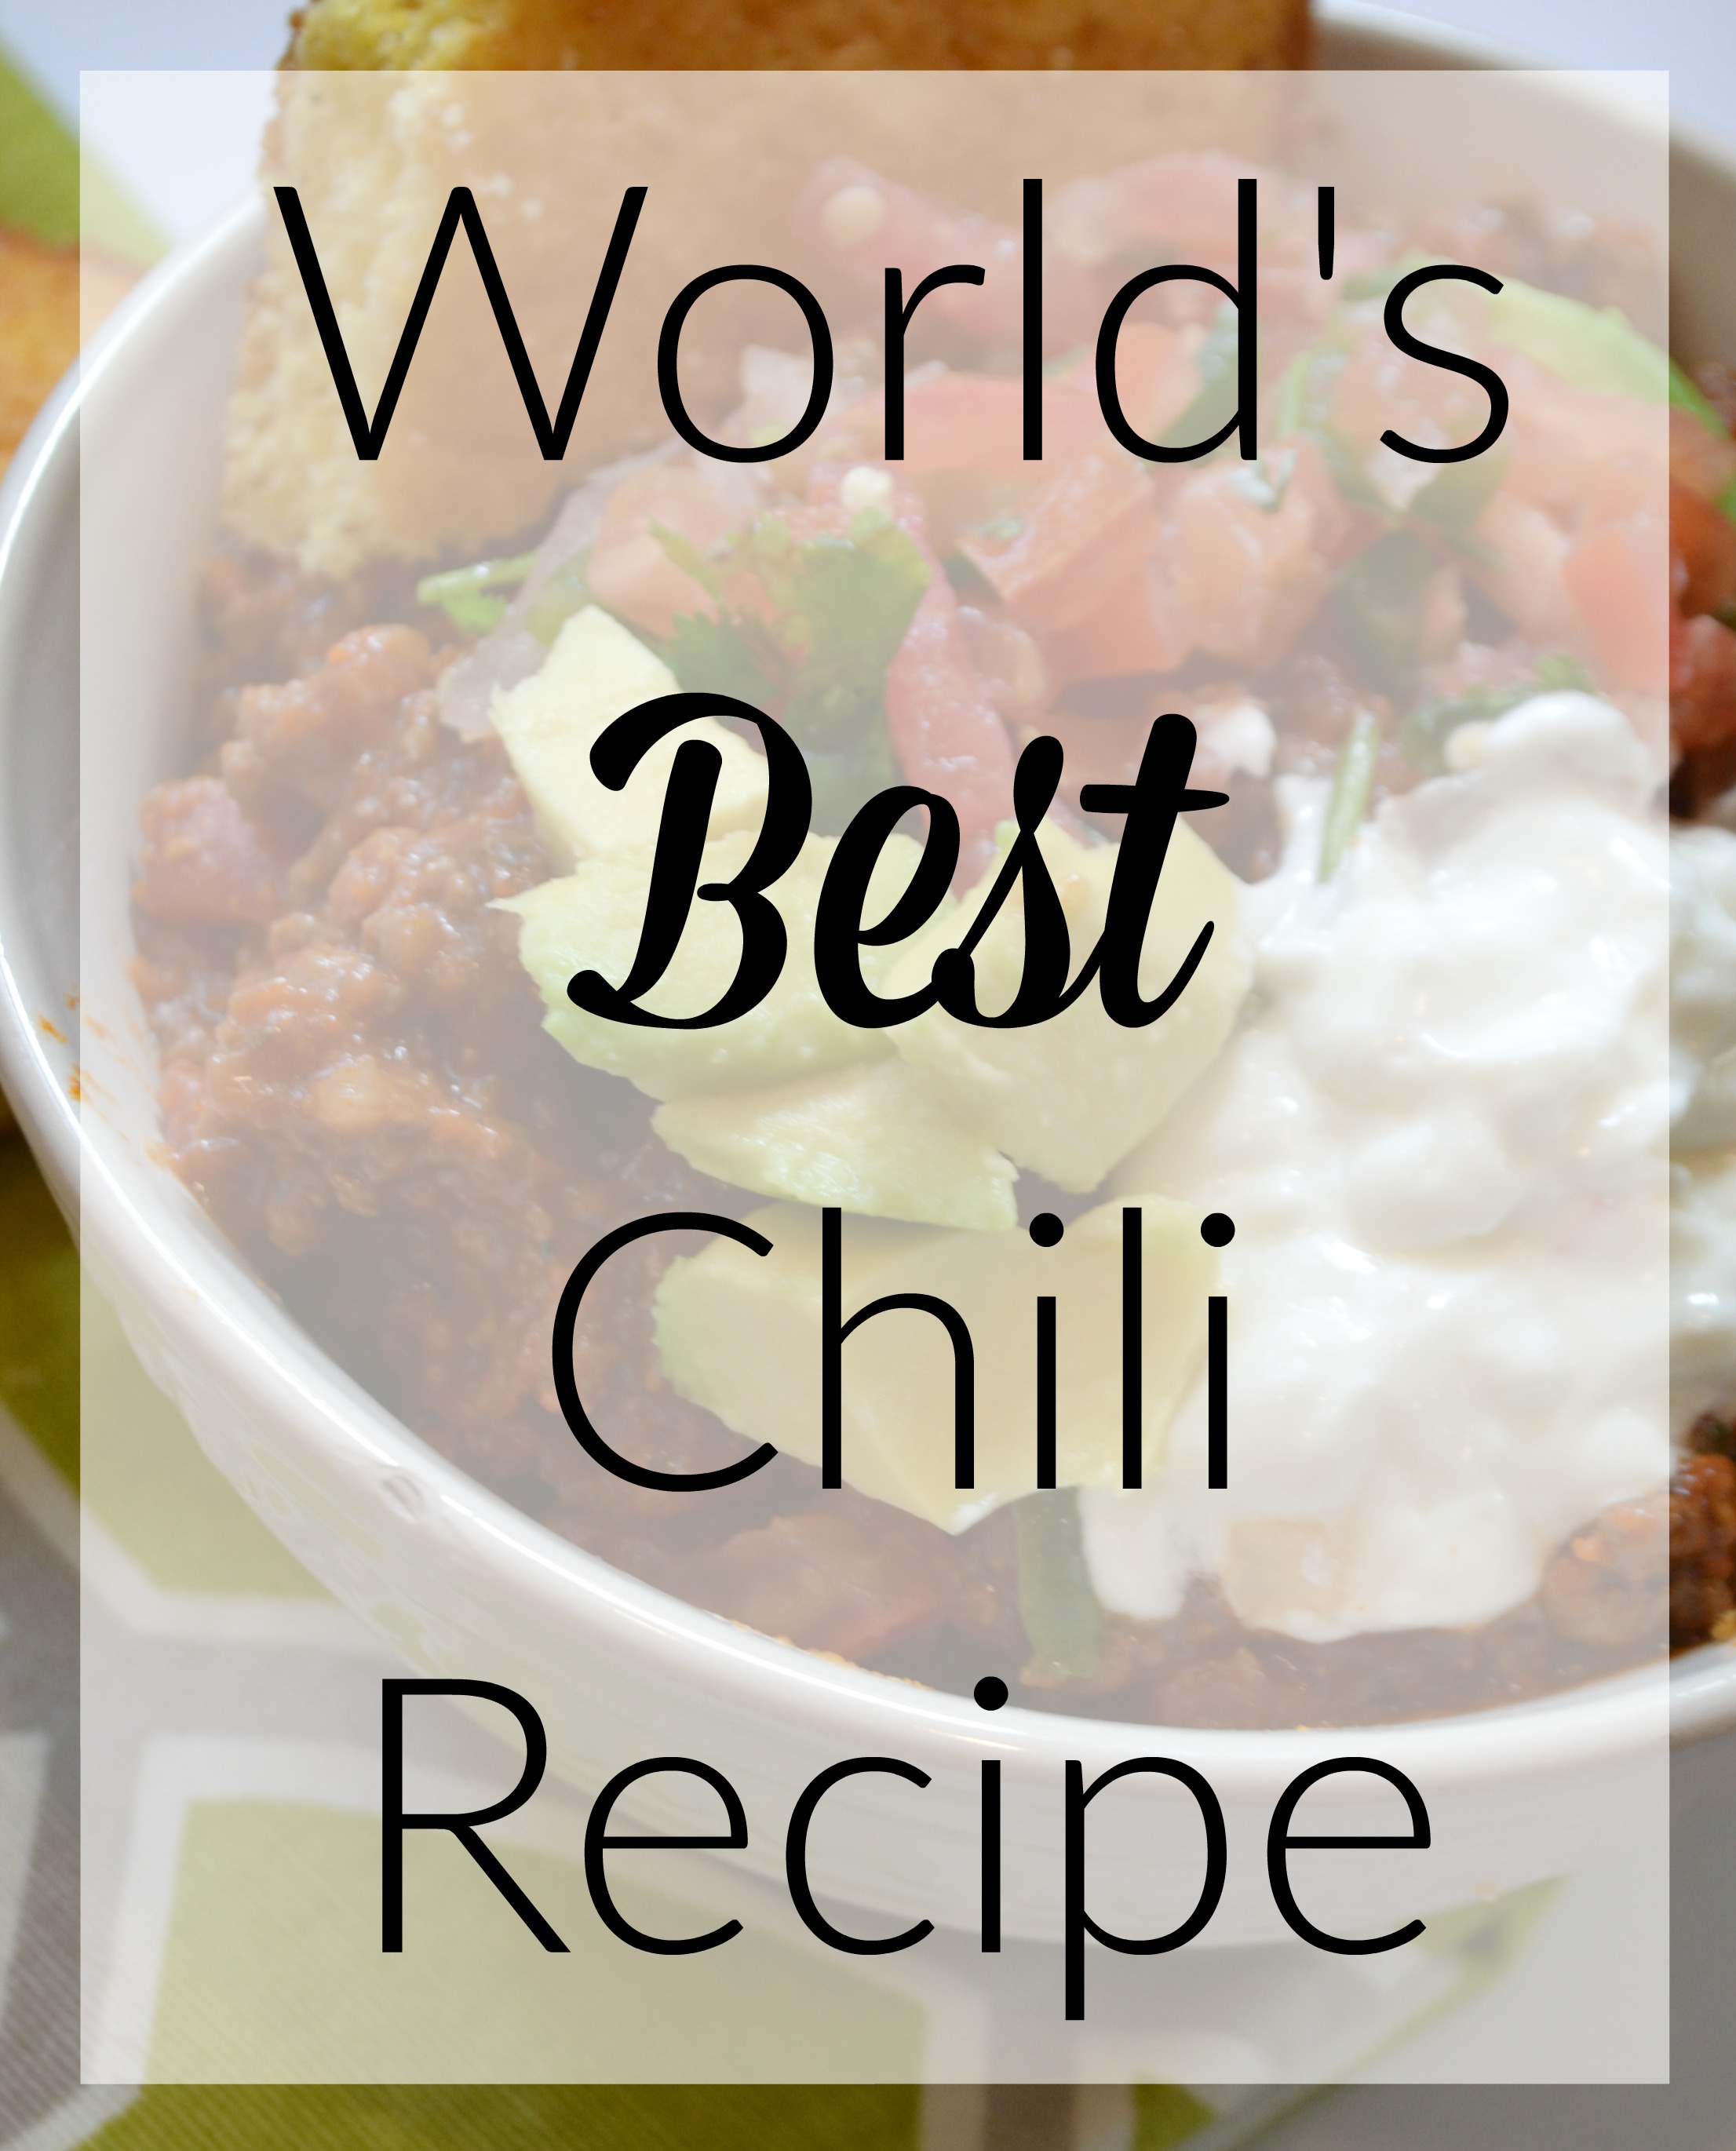 World’s Best Chili Recipe